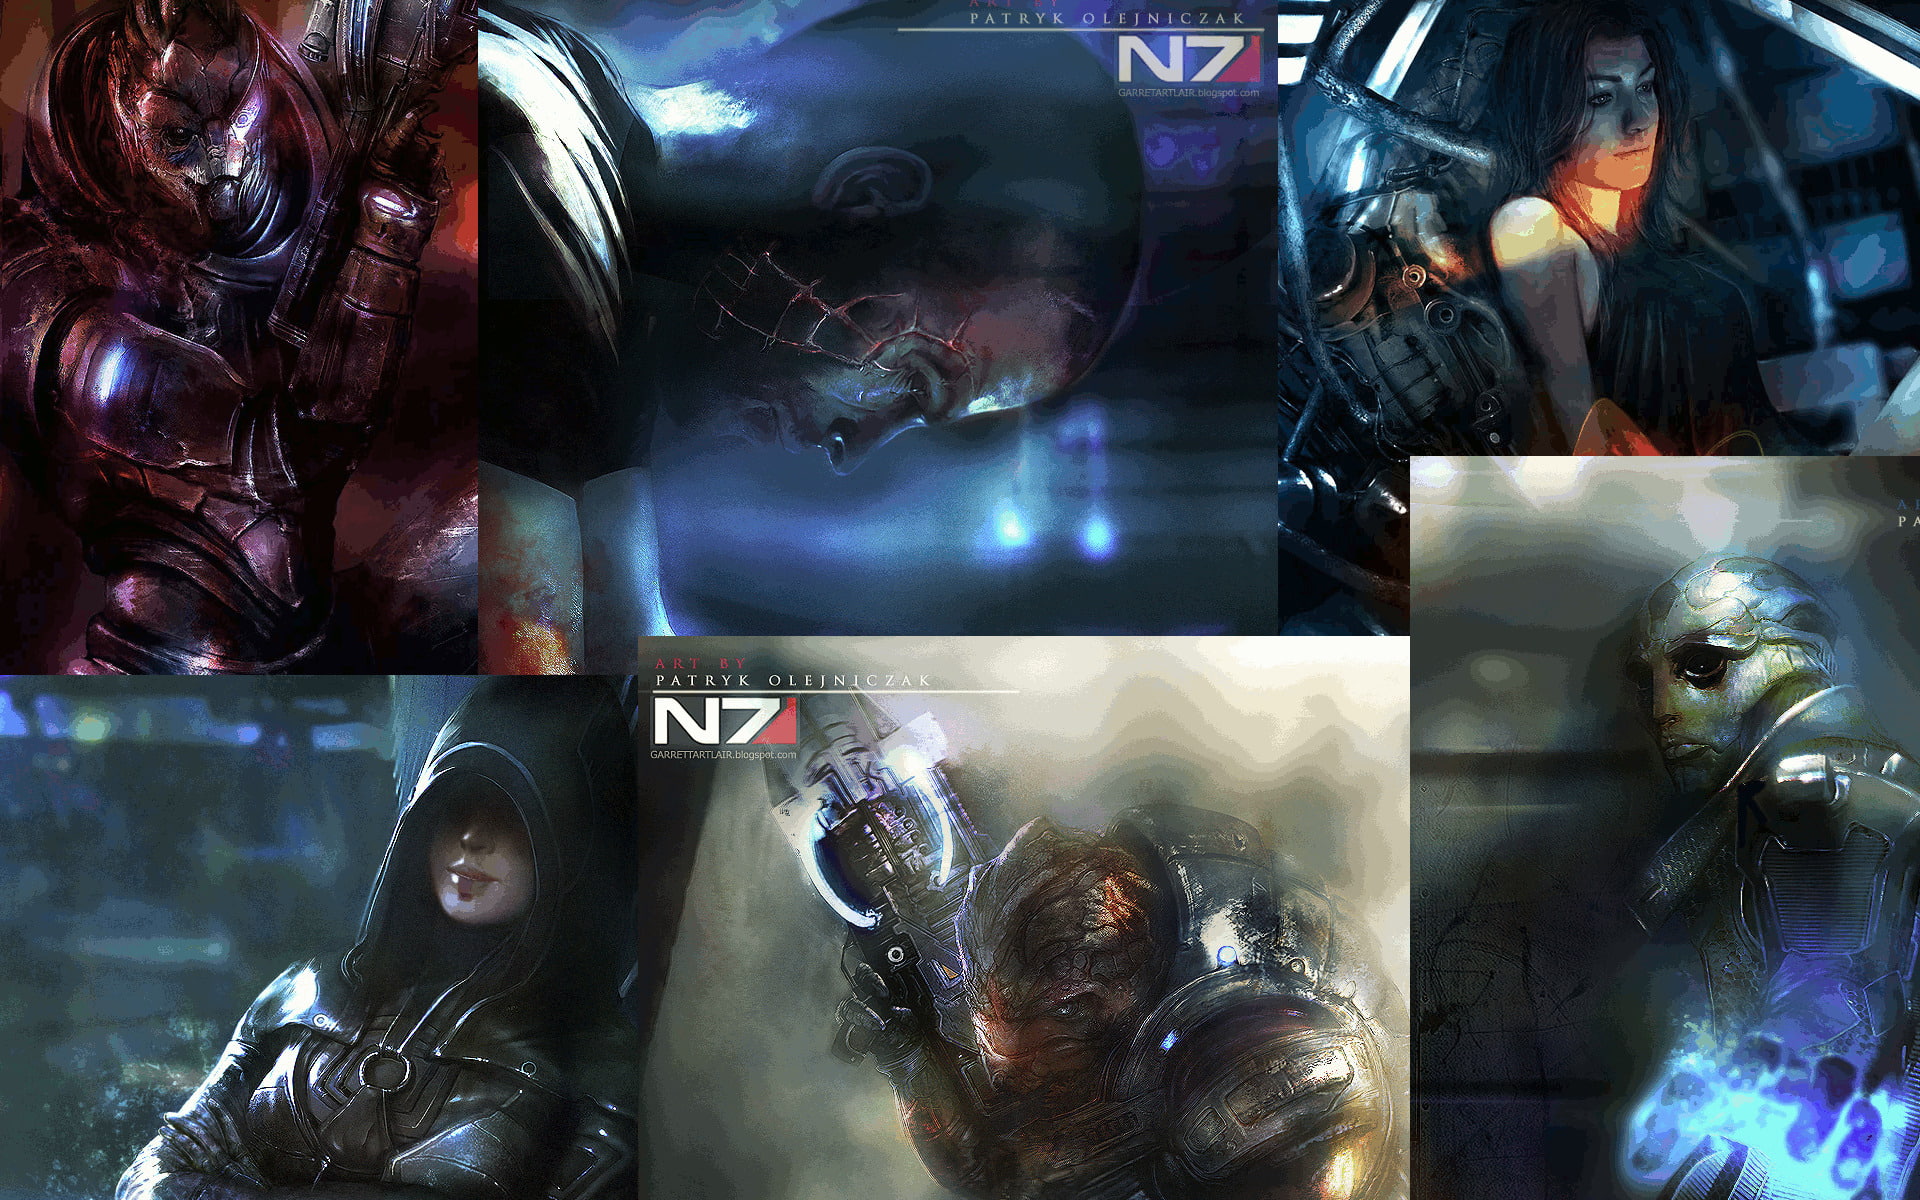 Mass Effect, Mass Effect 2, Commander Shepard, Garrus Vakarian